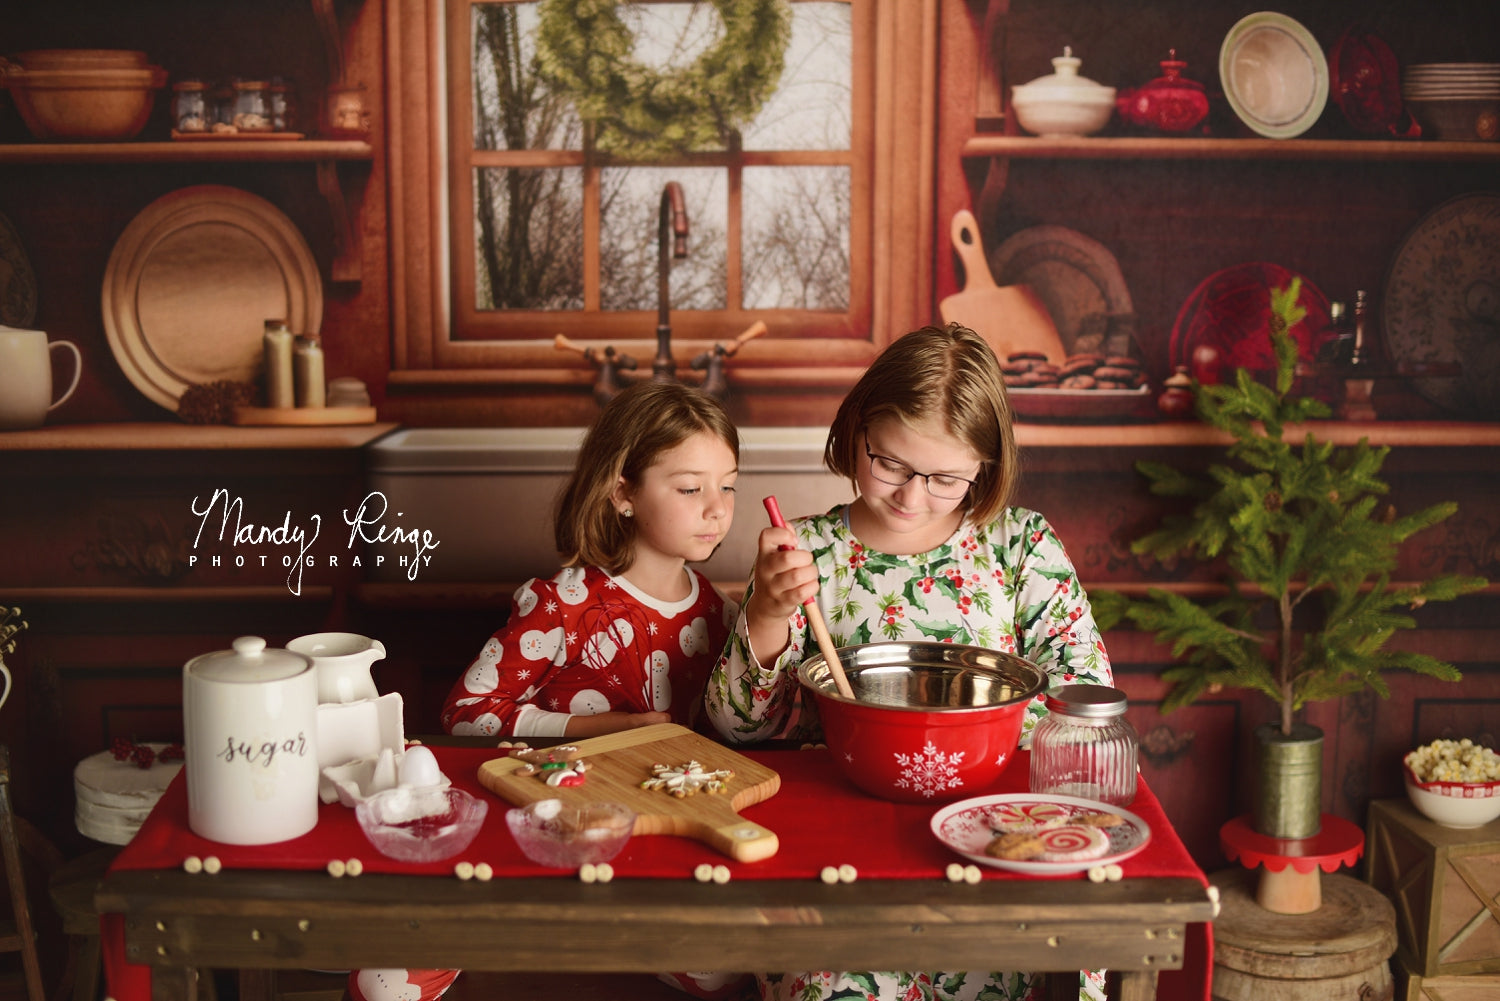 Kate Confortable Noël Cuisine Toile de fond conçue par Mandy Ringe